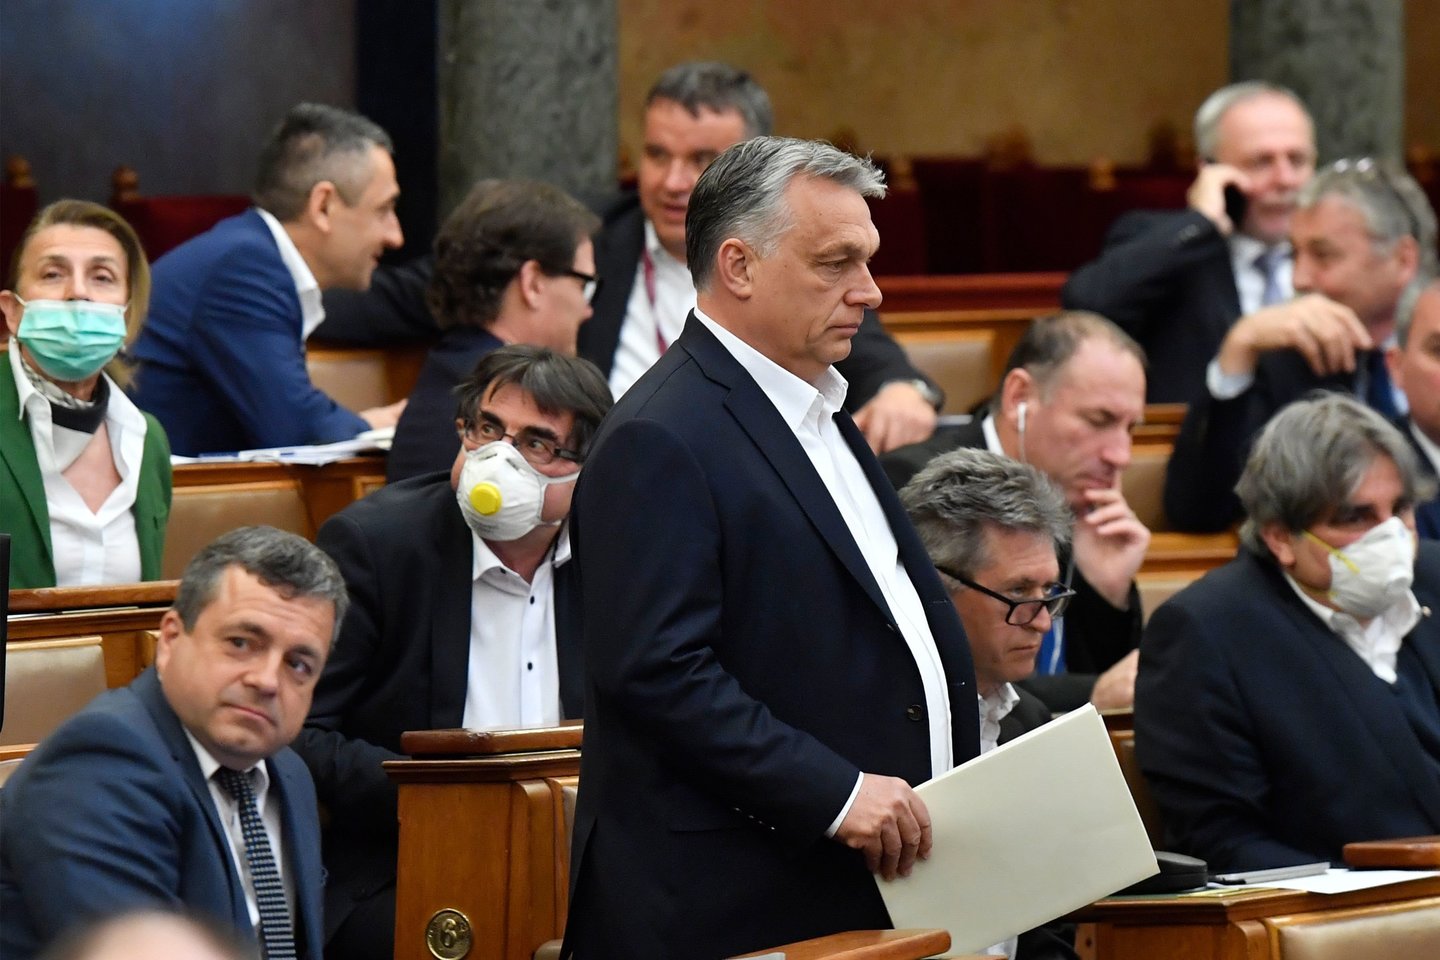  Vengrijos, Serbijos ir Juodkalnijos po beprecedenčio atsimetimo nebegalima vadinti demokratijomis, trečiadienį pareiškė žmogaus teisių organizacija „Freedom House“, atkreipdama dėmesį į ypač „staigų“ vengrų premjero Viktoro Orbano „režimo“ kritimą metiniame organizacijos reitinge.<br> AFP/Scanpix  nuotr.